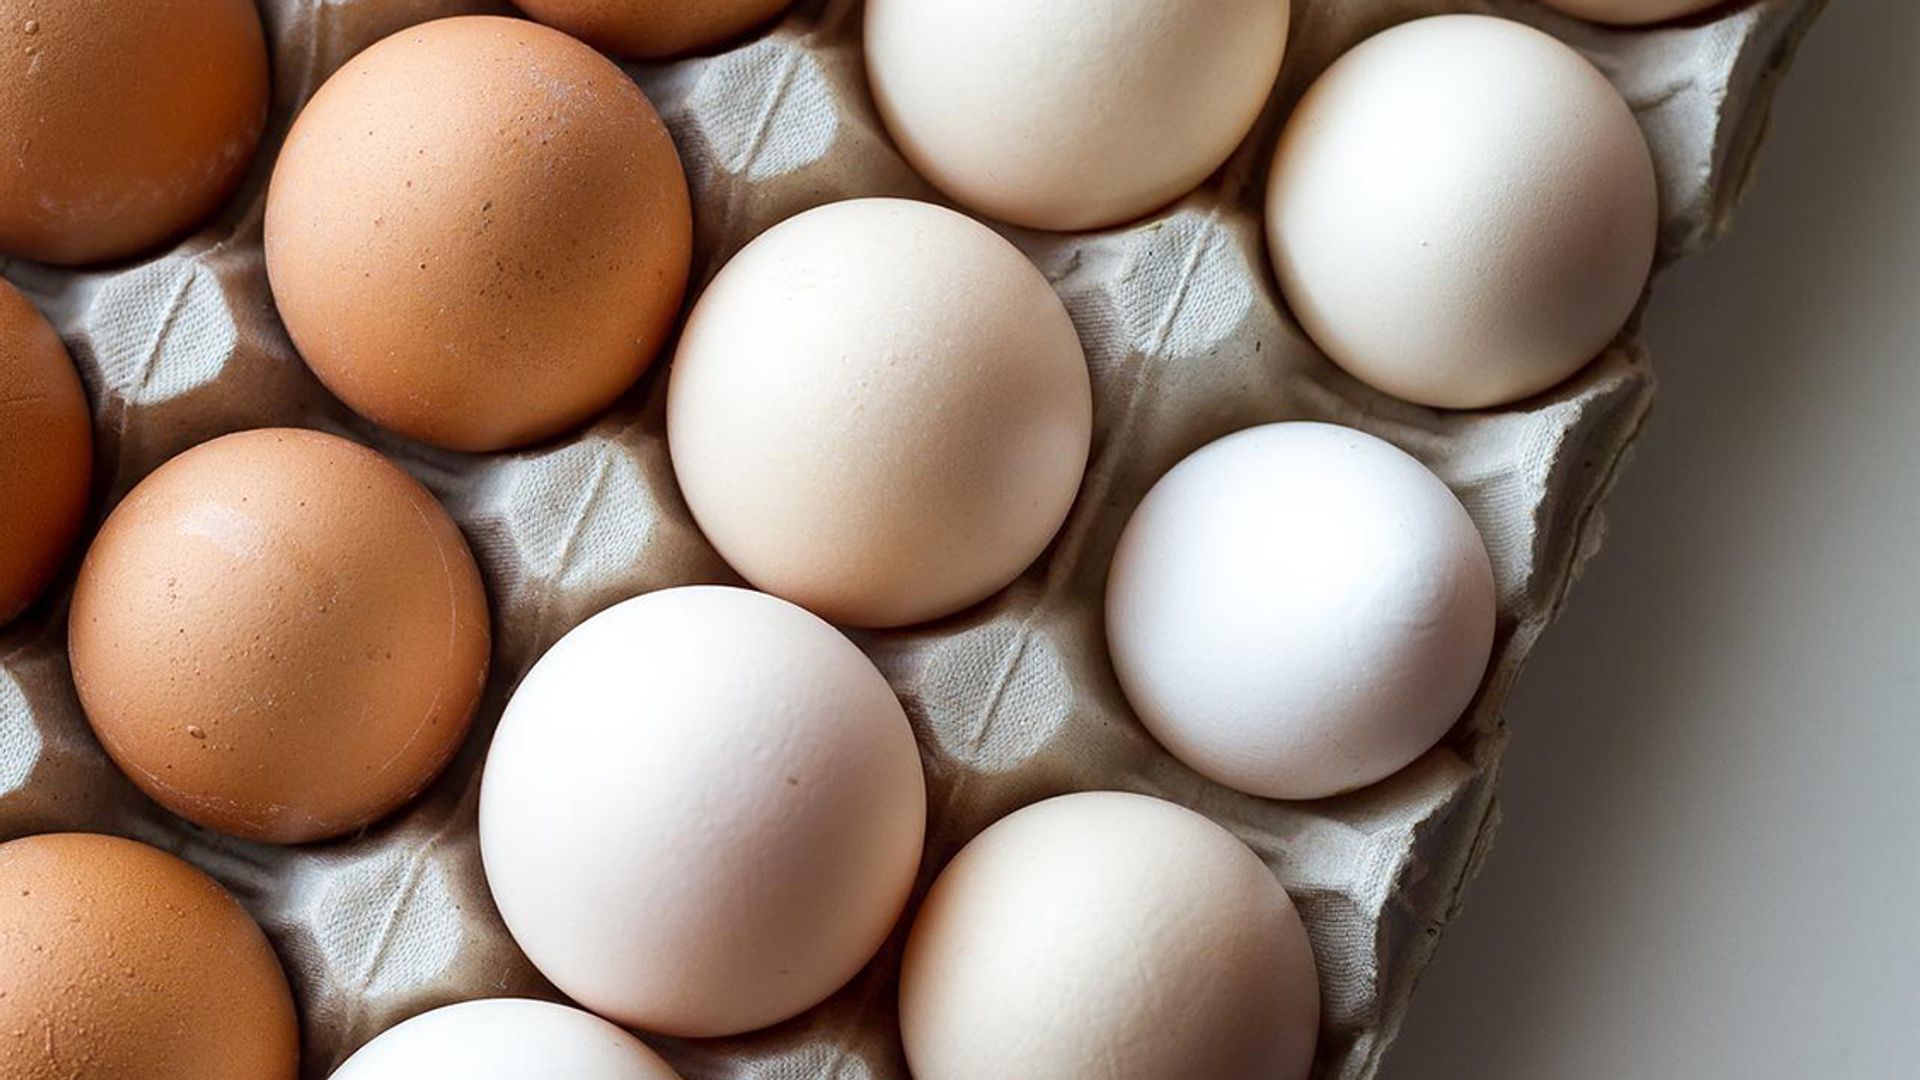 Witte en eieren: wat zijn de verschillen en wat - Kassa - BNNVARA